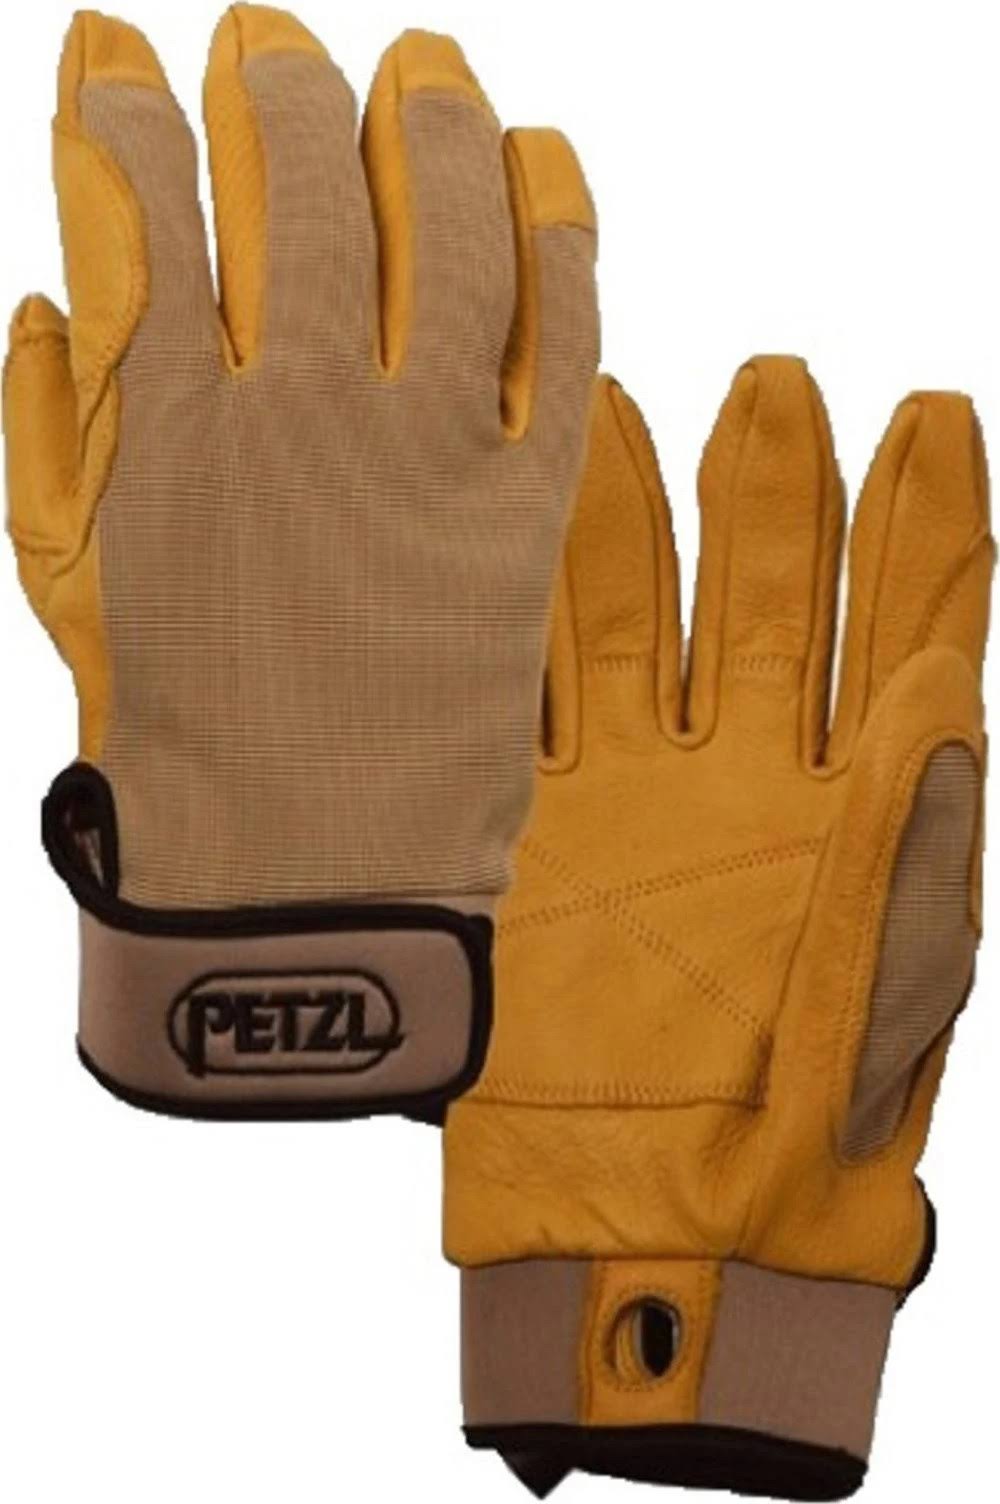 Petzl Cordex Belay/Rappel Glove, Tan, L